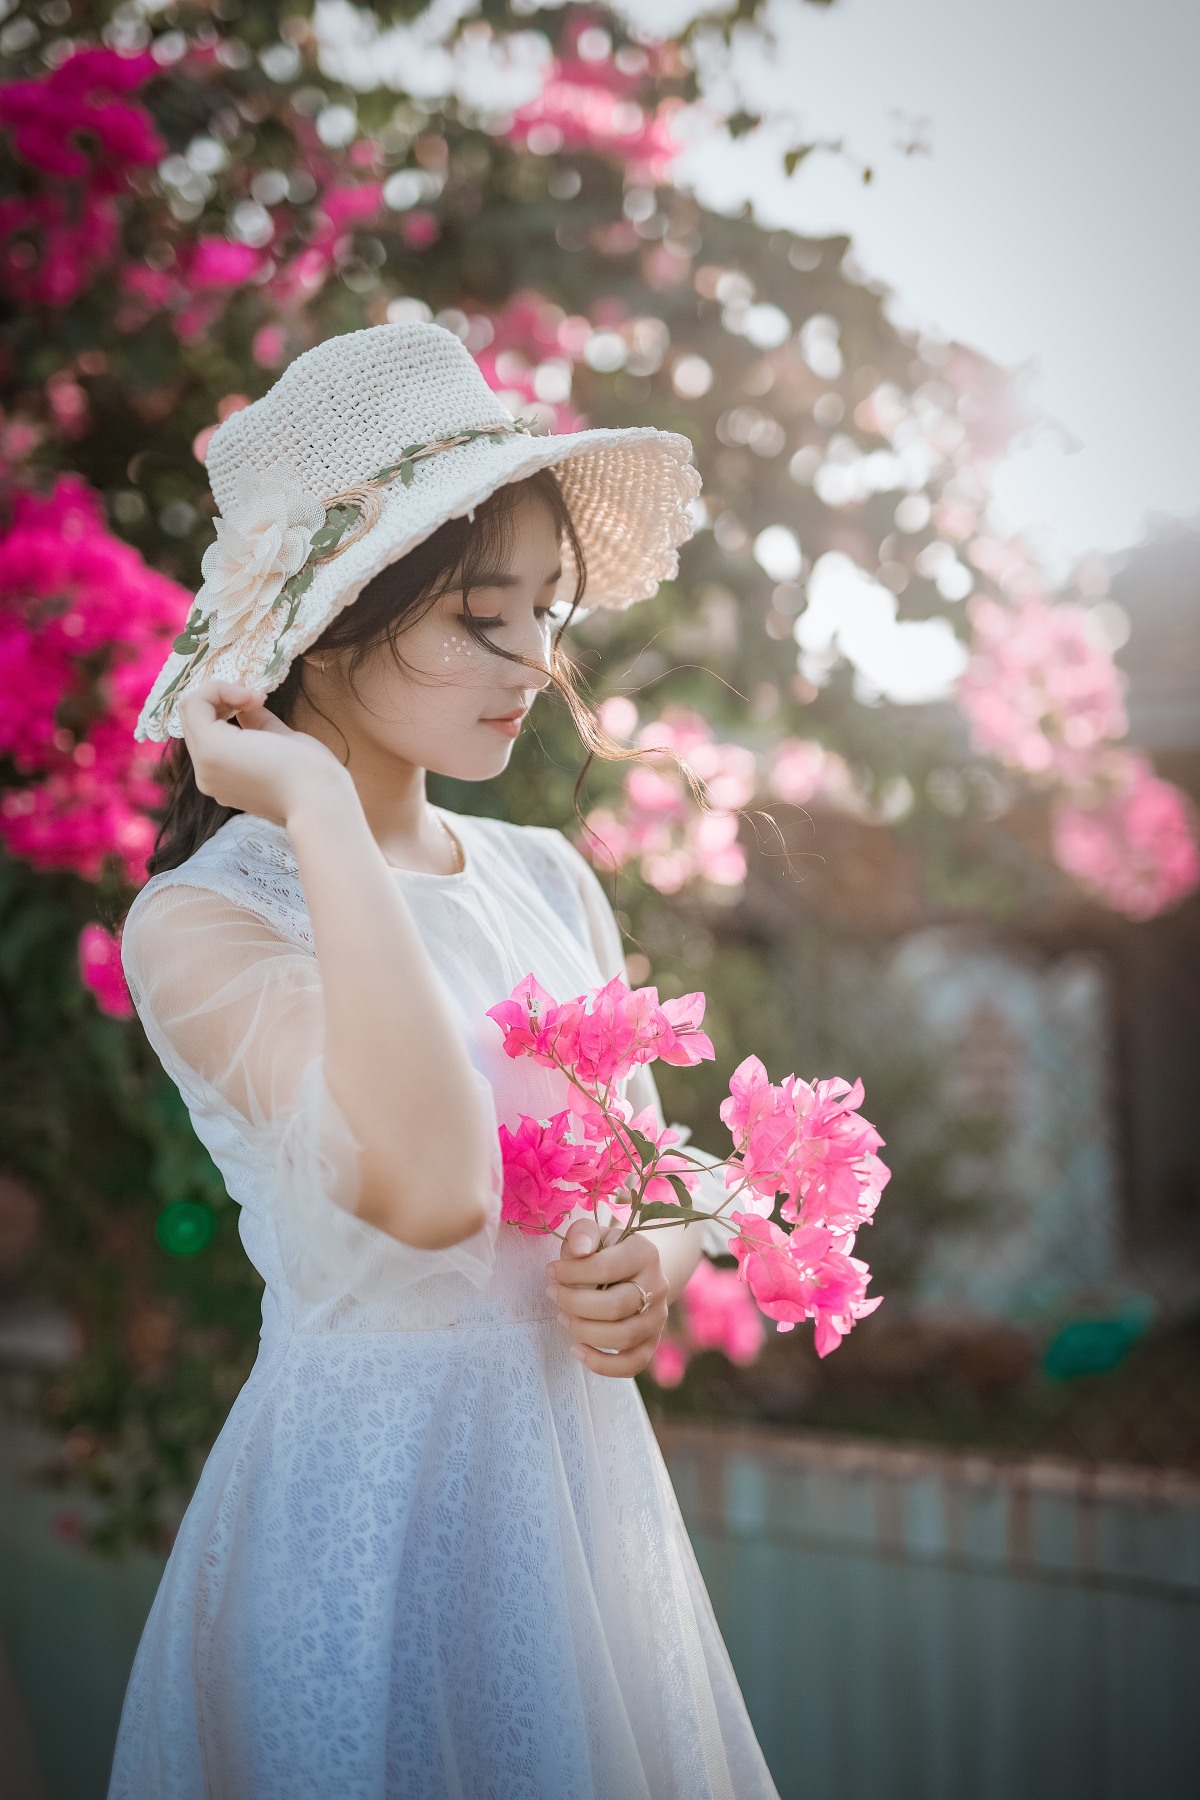 手拿鲜花的清纯美女 3840×5760免费图片